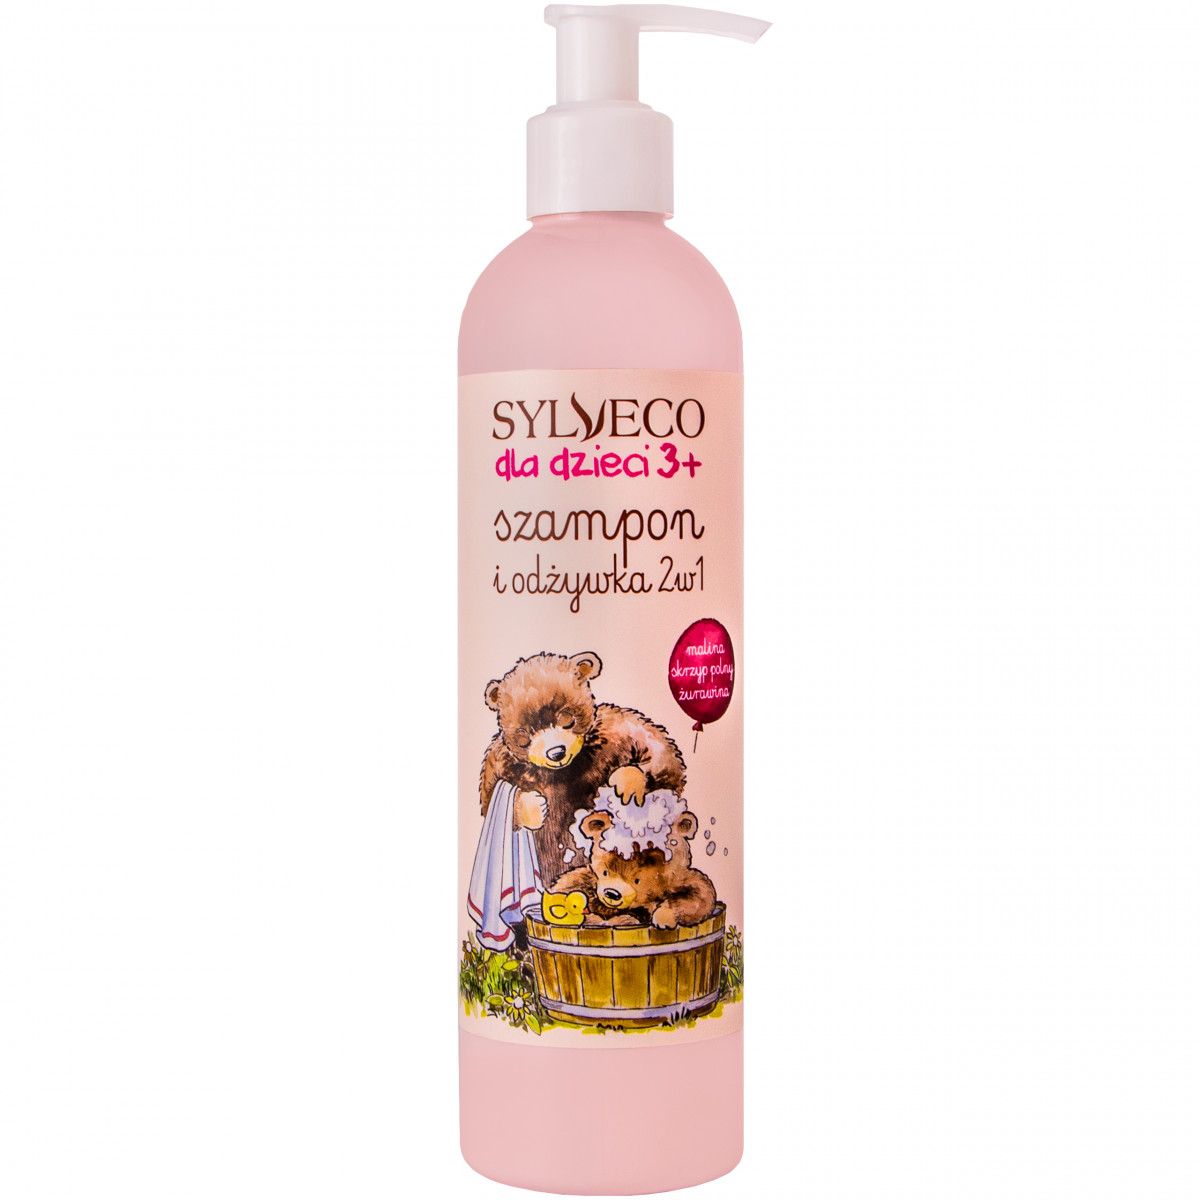 szampon z odzywka dla dzieci